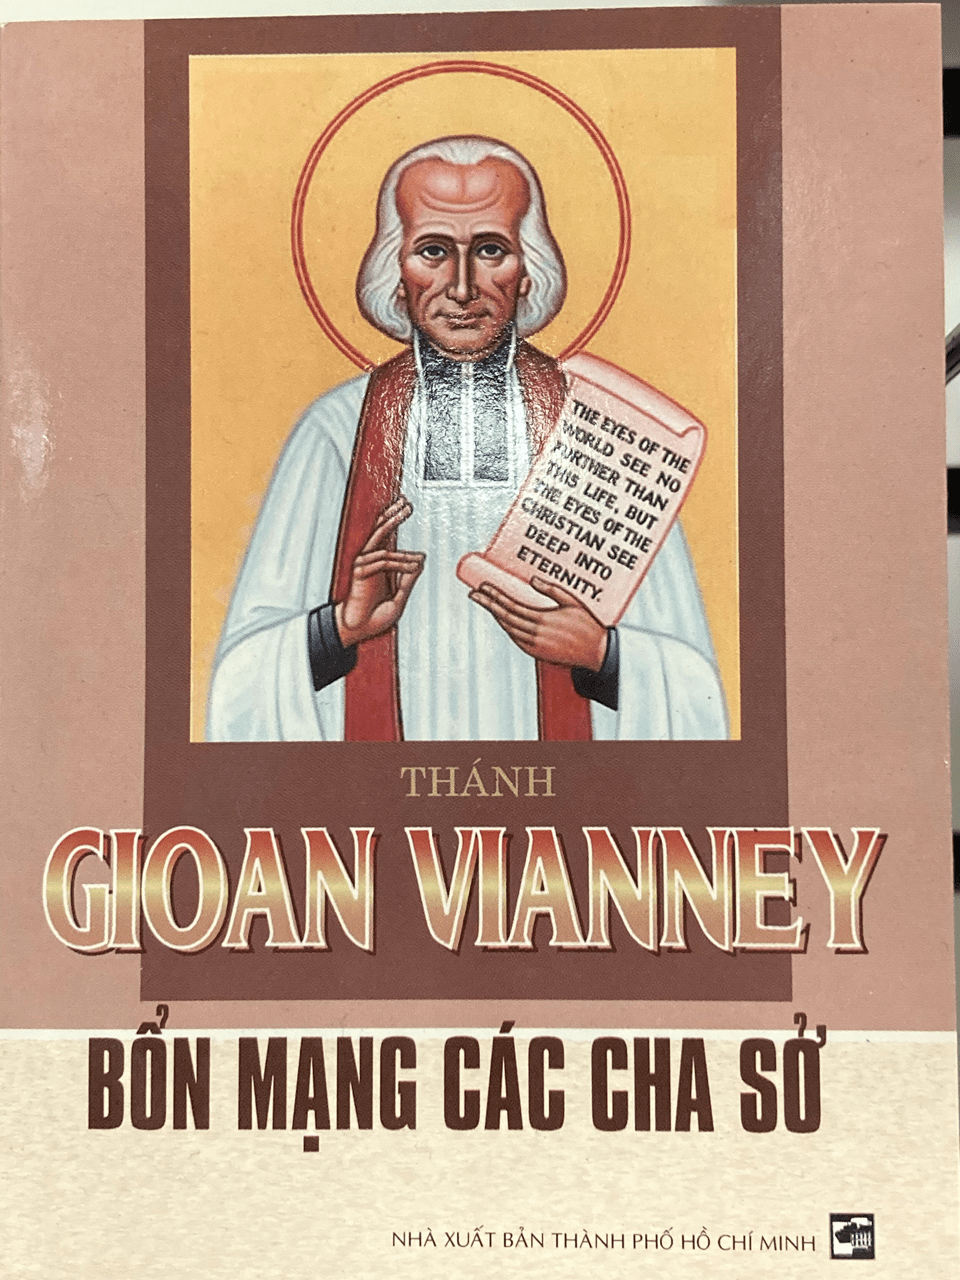 Thánh Gioan Vianney